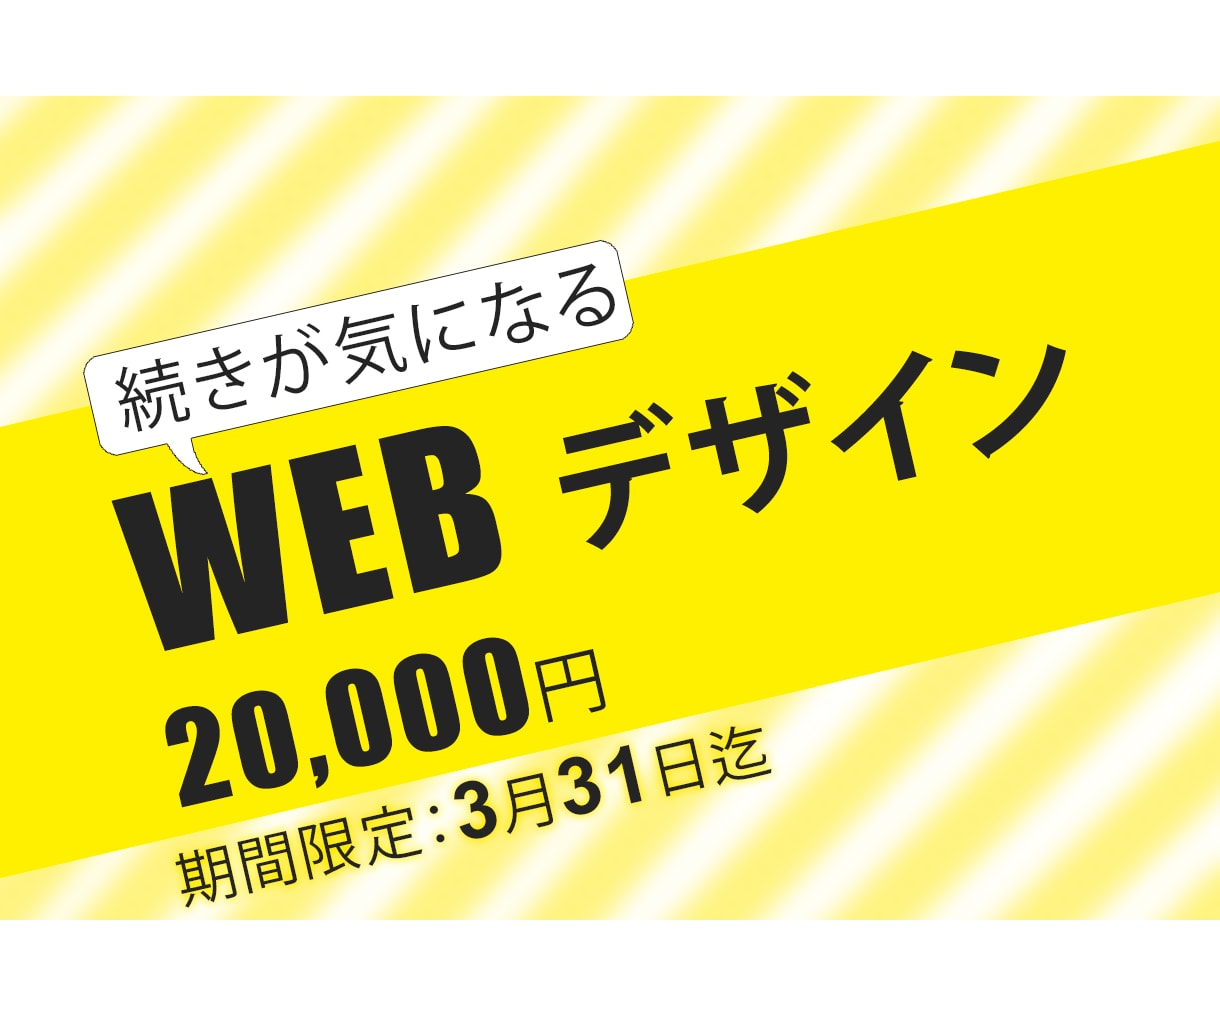 3月３1日迄！Web 制作２００００円で行います 世界の顧客を引き付けるWeb ページ制作いたします。 イメージ1